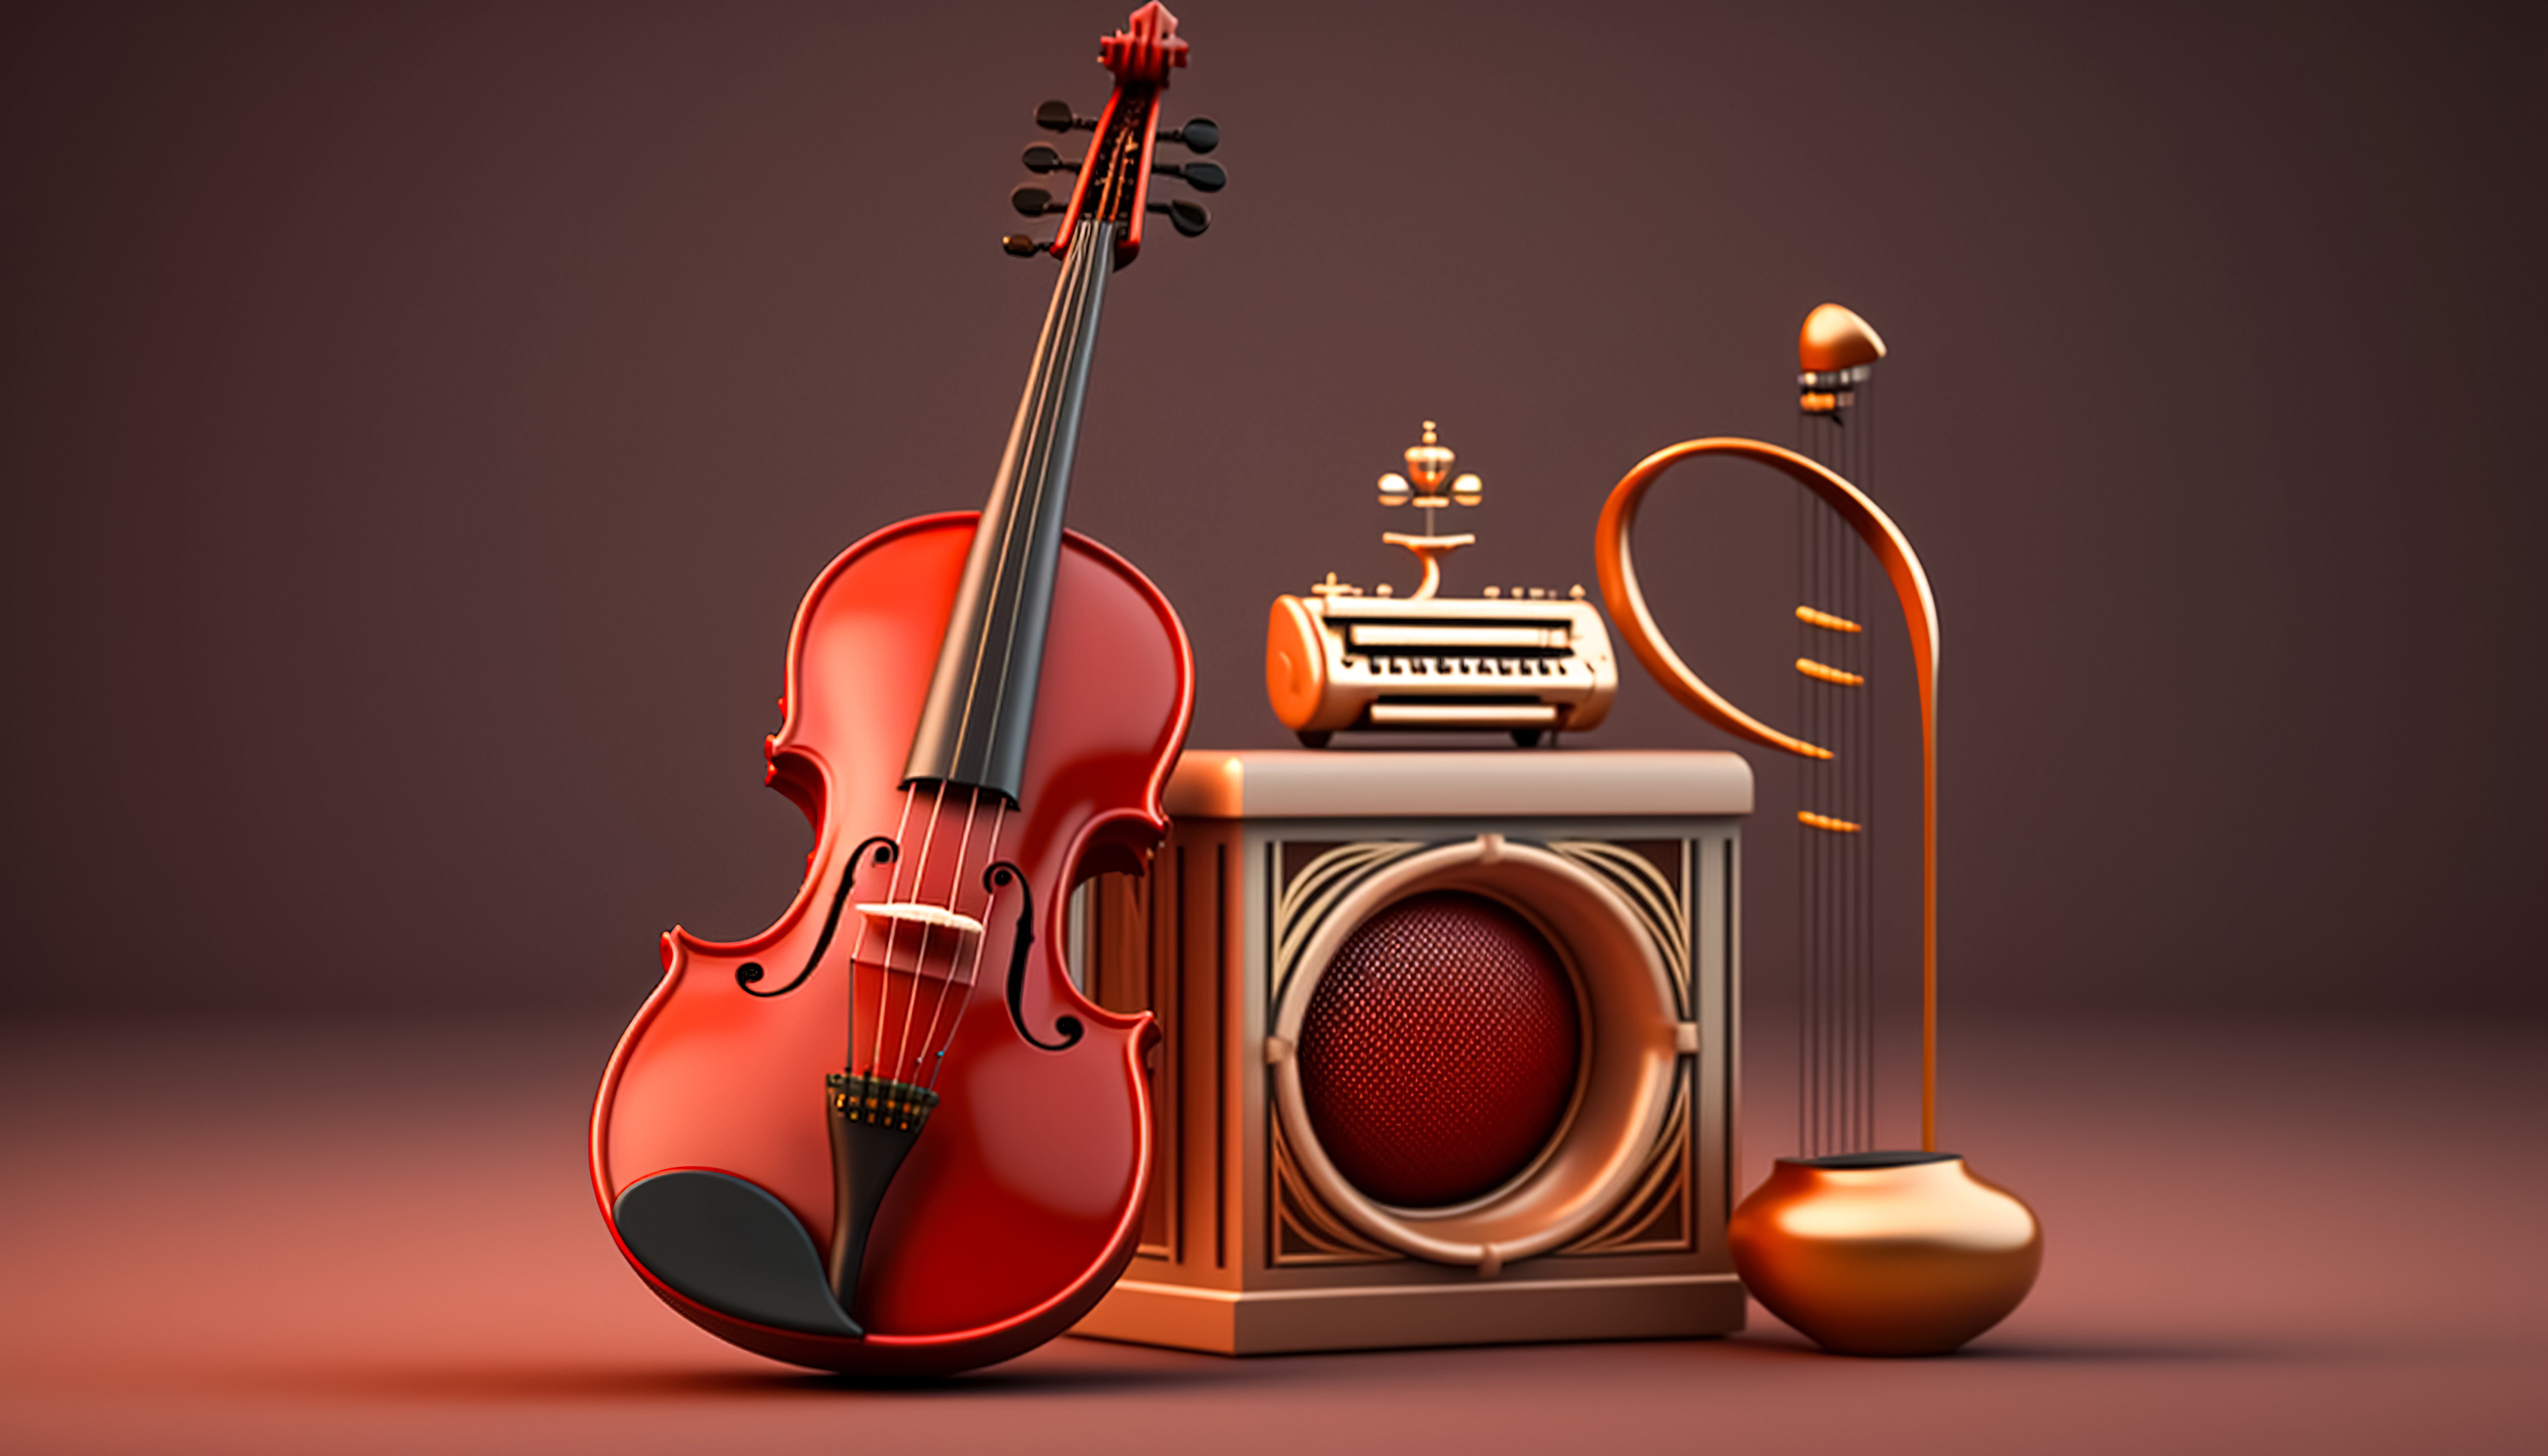 Müzik Aletleriyle Duygusal Bağımız: Müziğin Ruhsal Etkisi